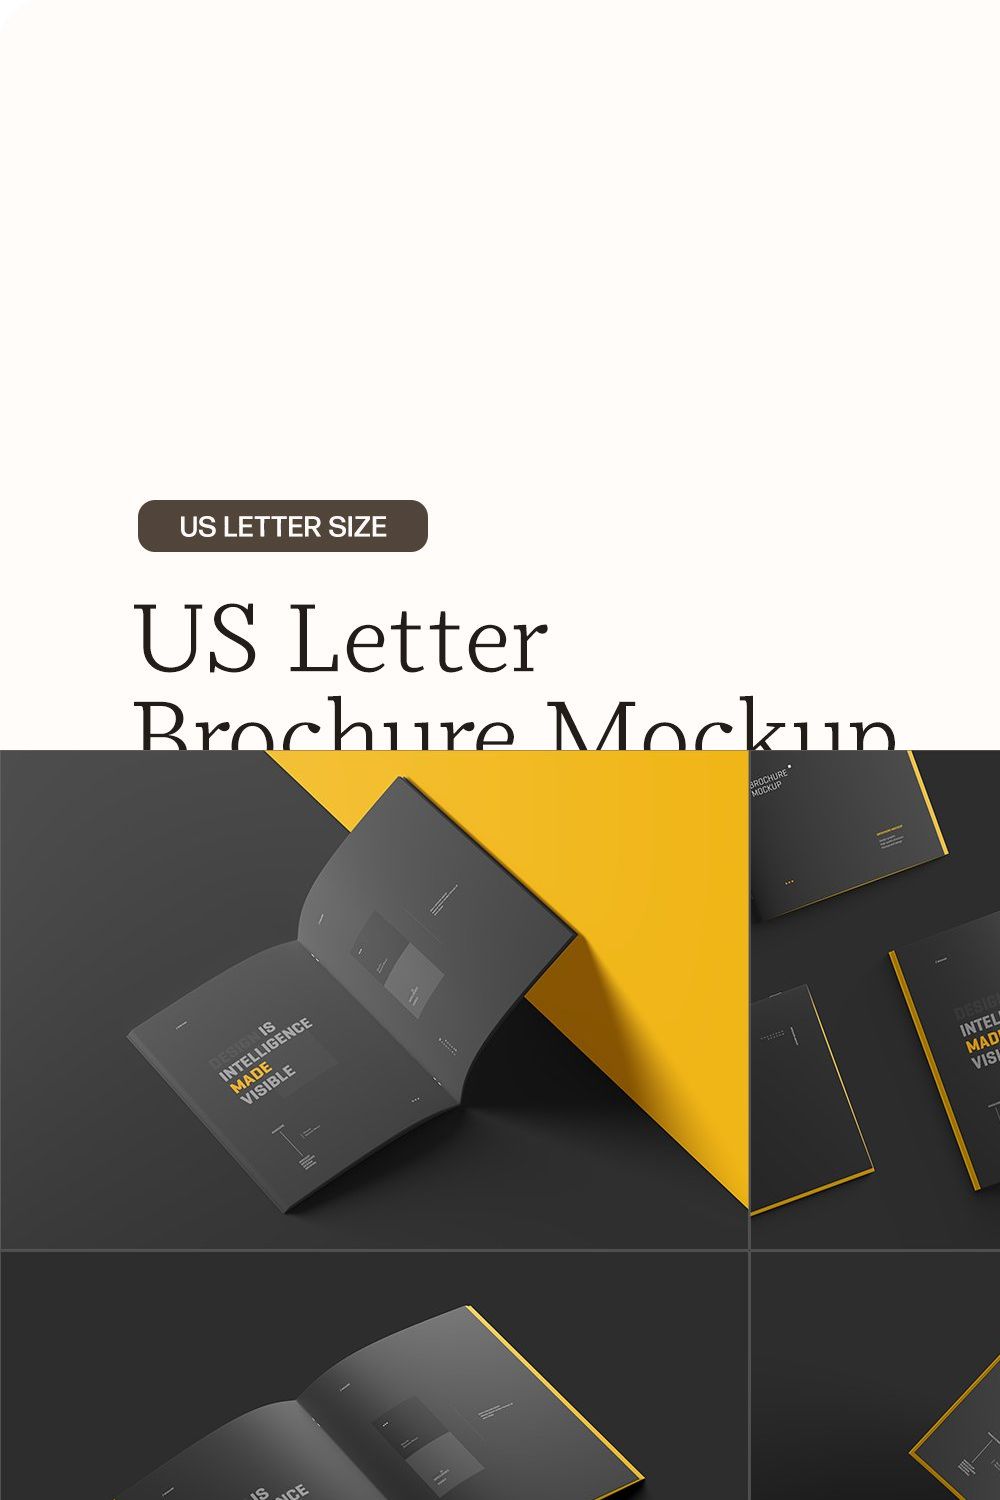 US Letter Brochure Mockup Set pinterest preview image.